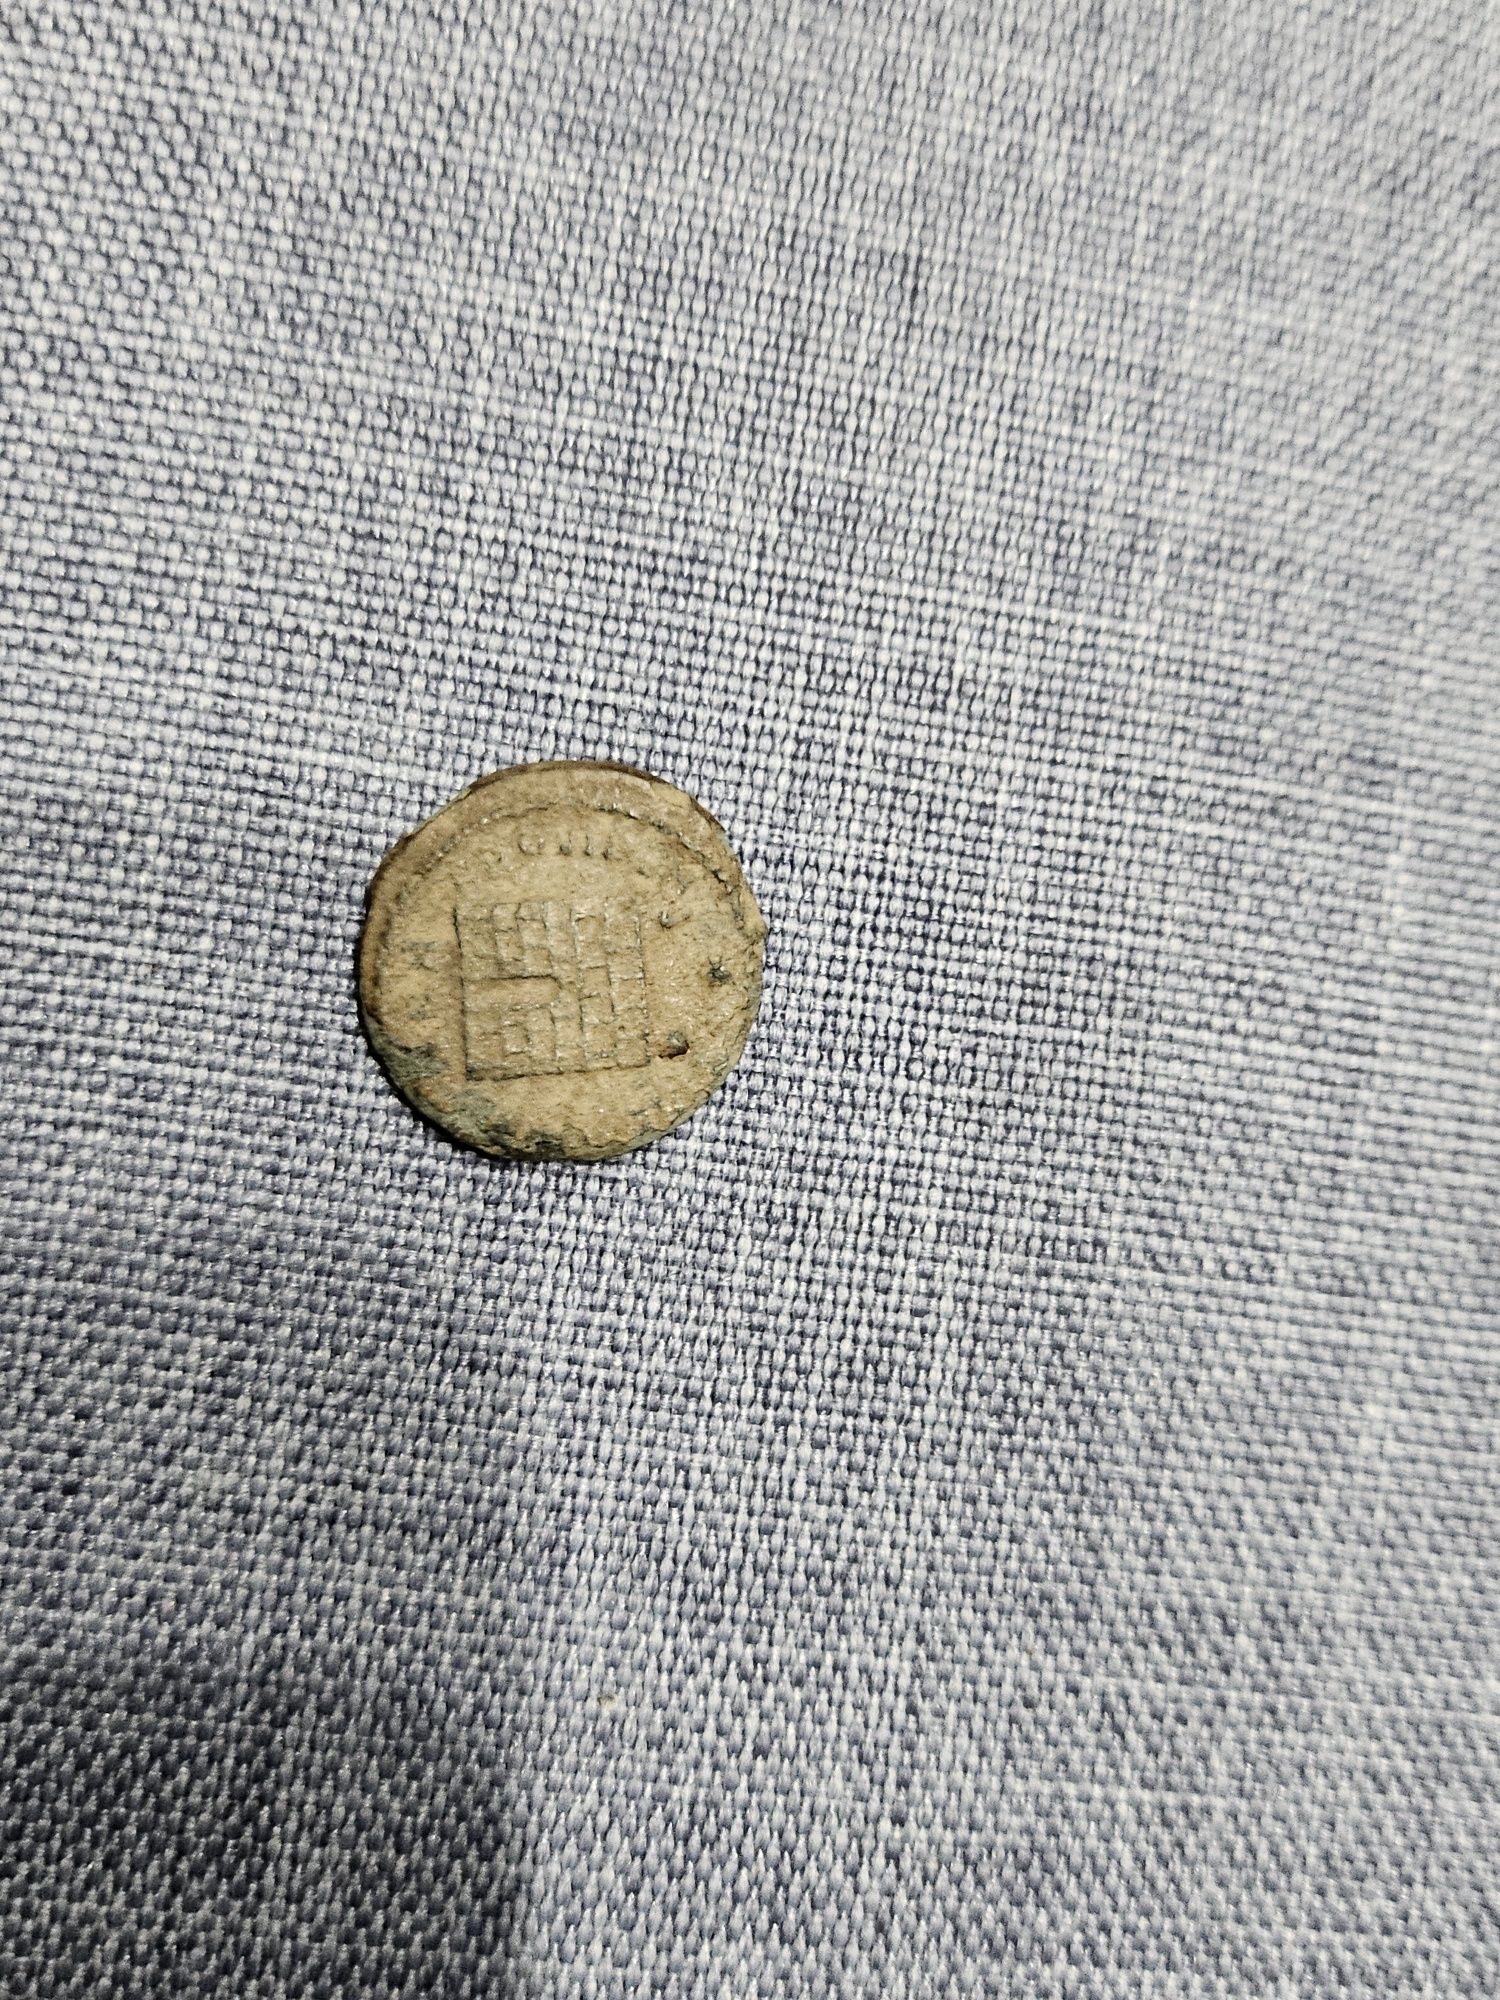 Продавам антични монети